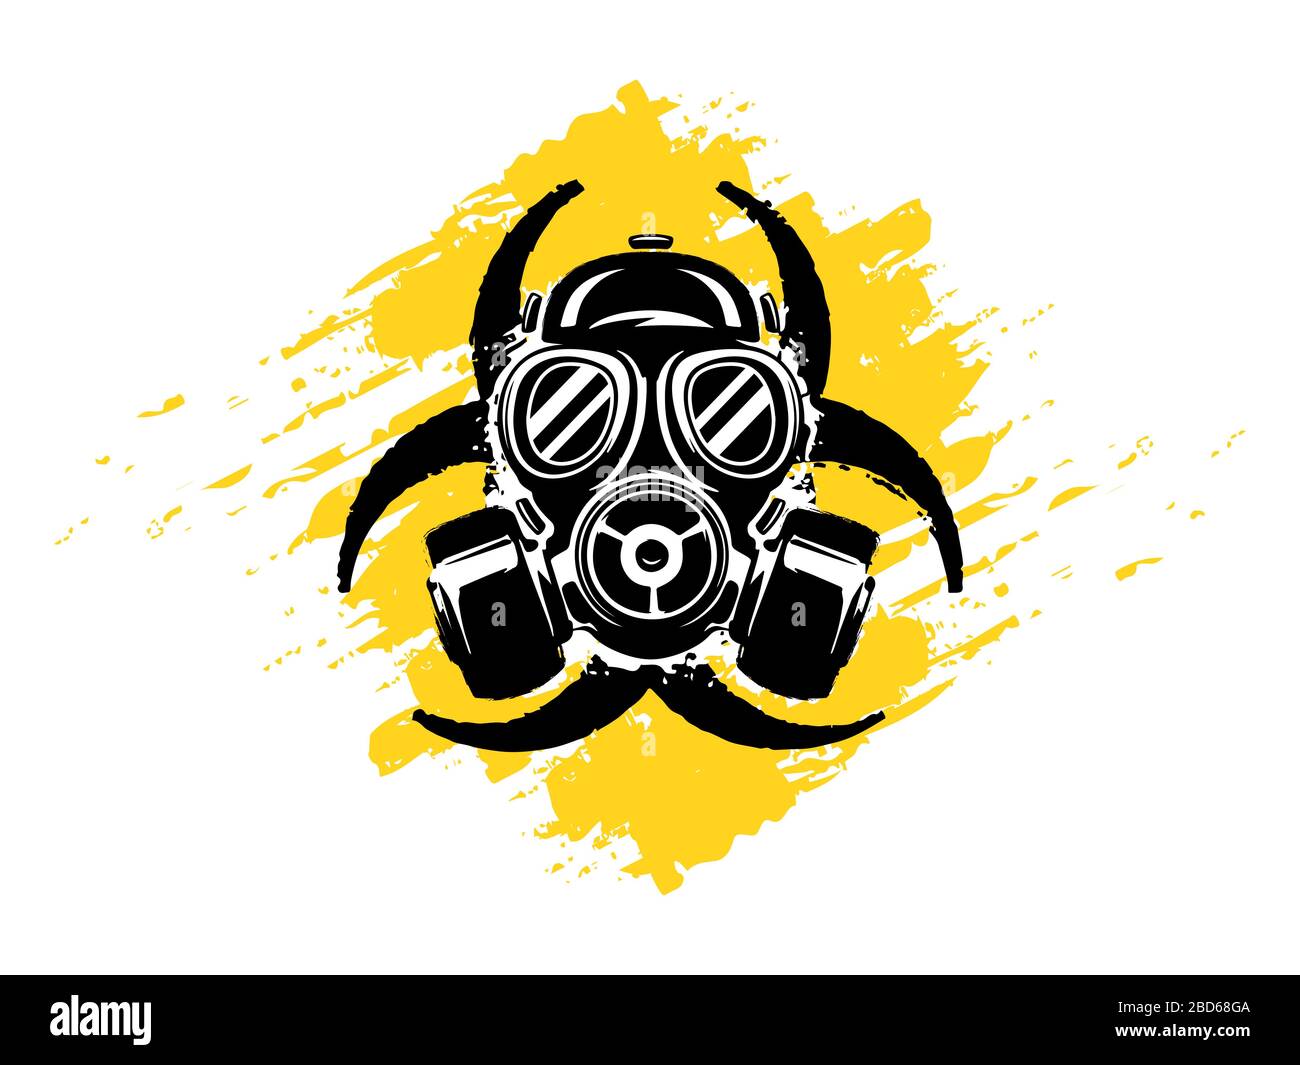 Segno di Biohazard con maschera a gas immagine vettoriale grunge. Concetto di inquinamento e pericolo. Pandemia o concetto epidemico. Rischio biologico. Illustrazione Vettoriale